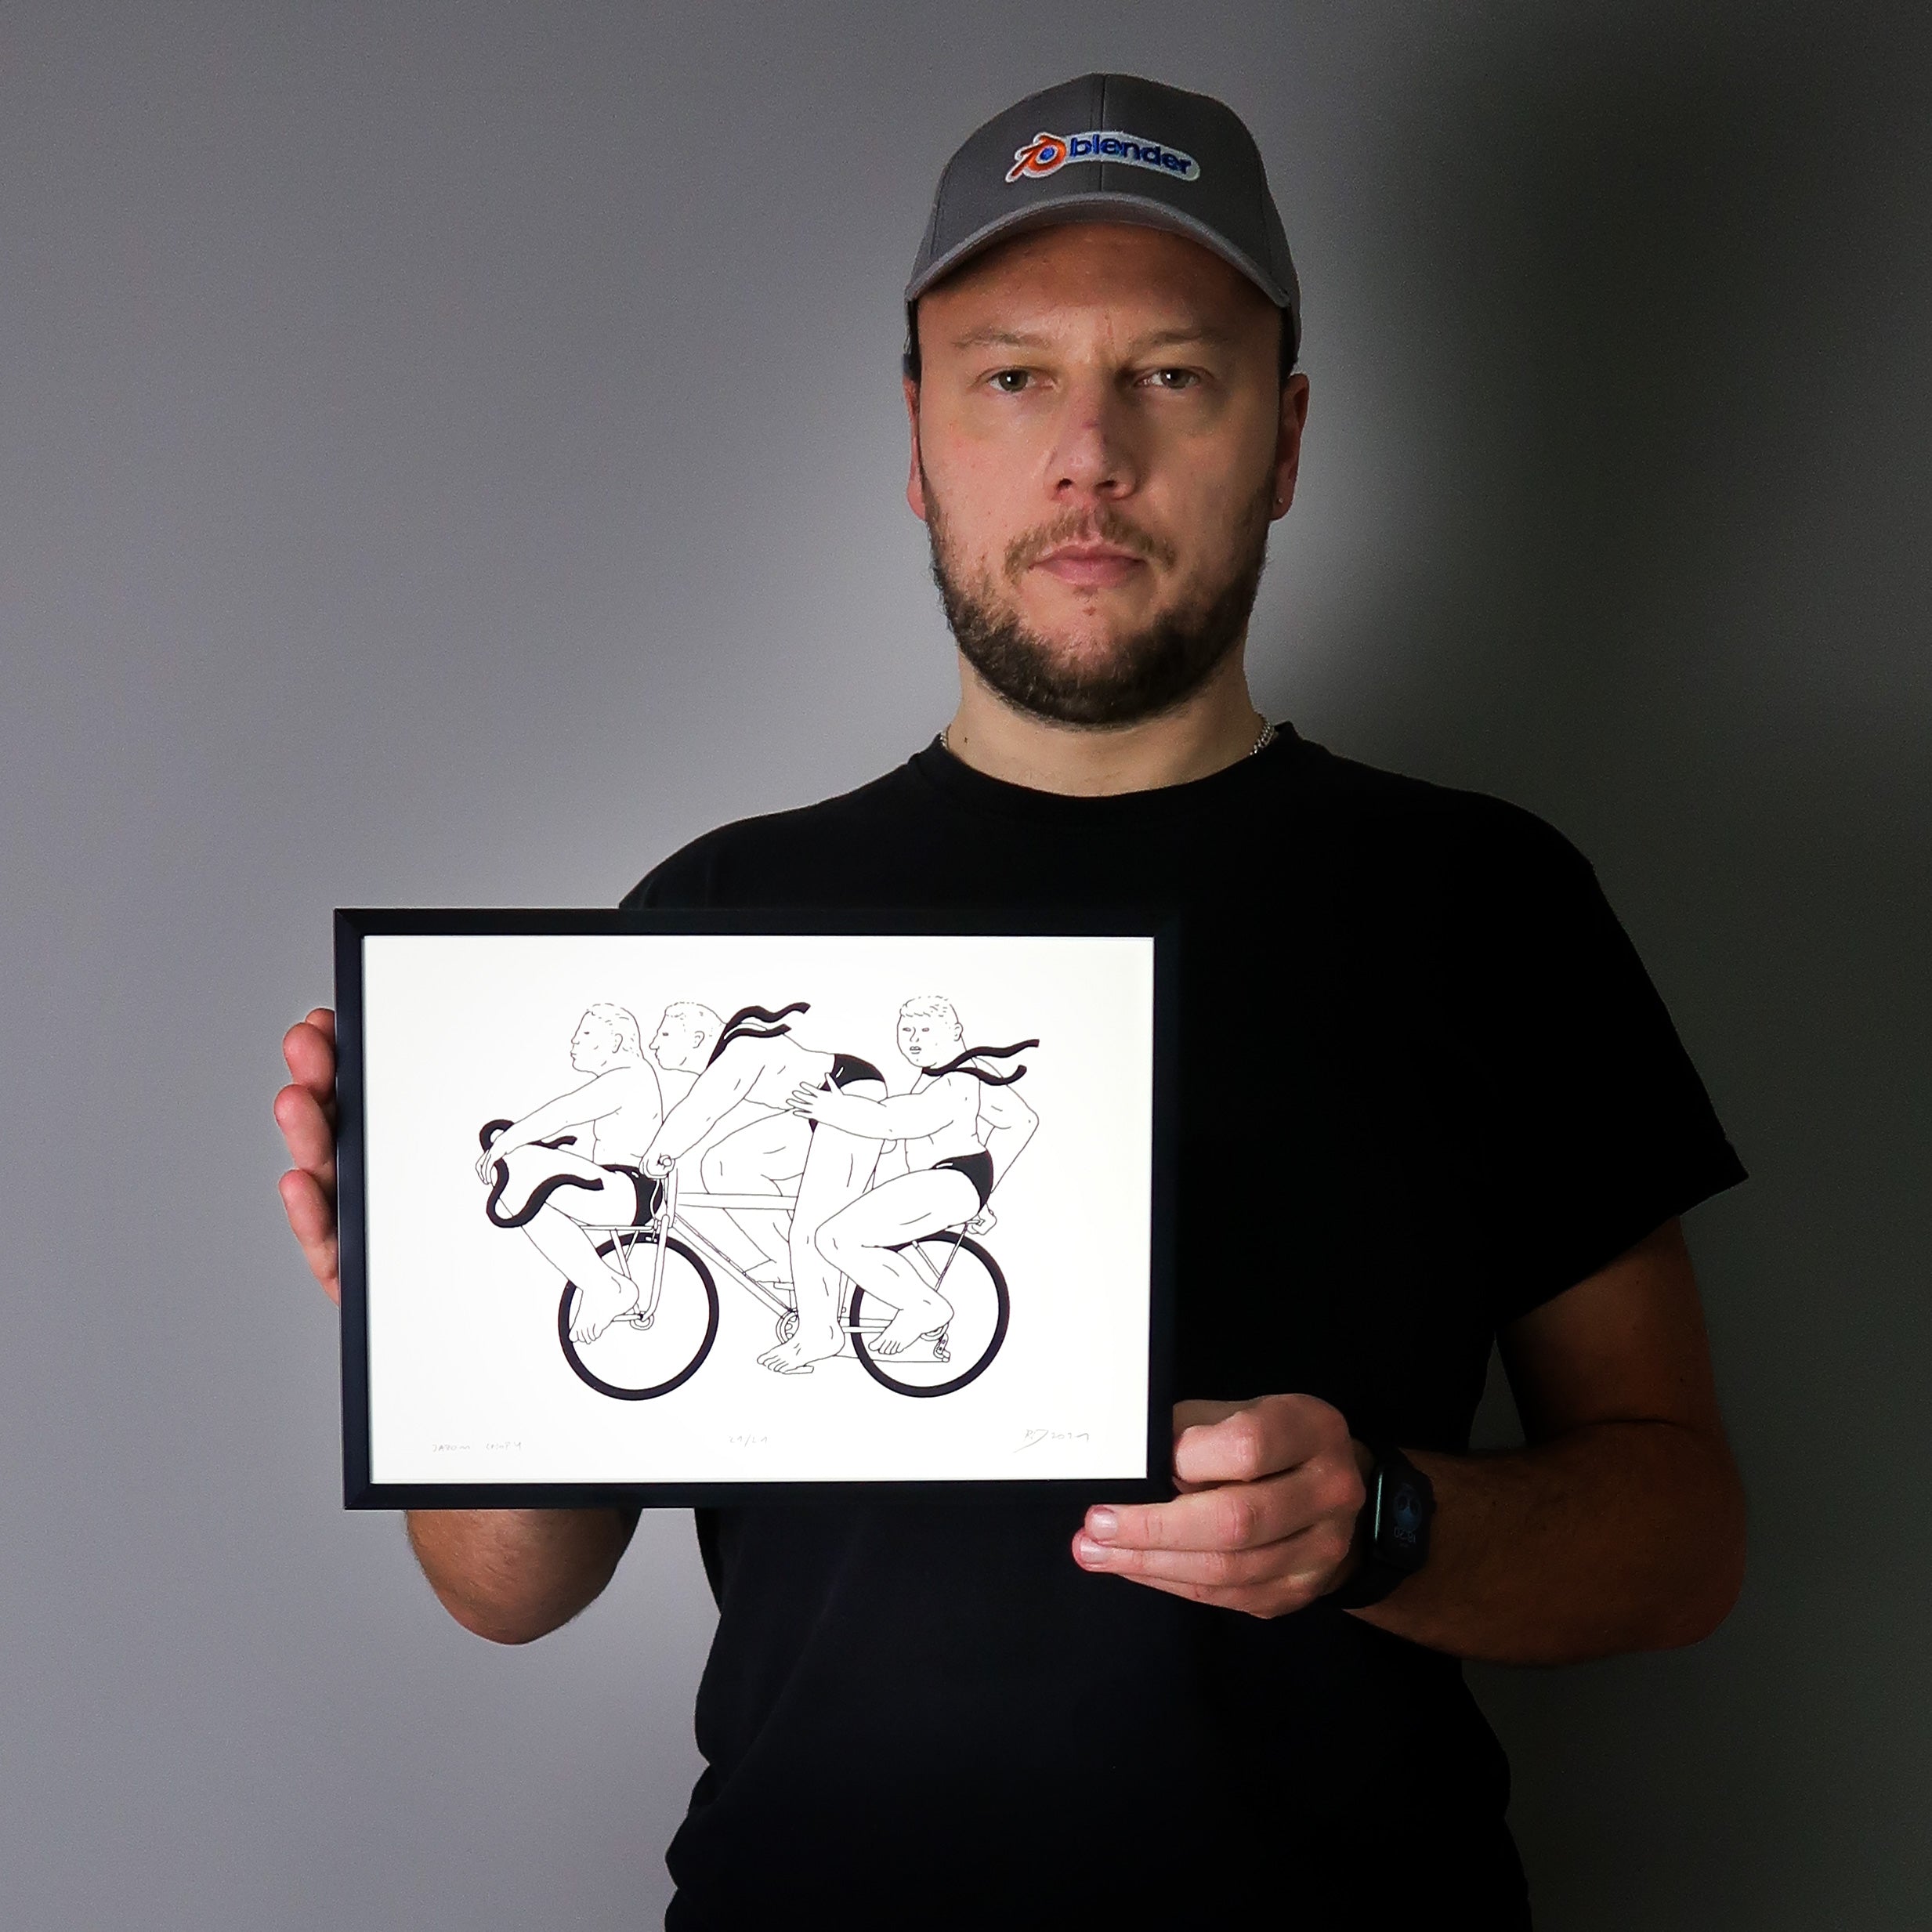 rafał dominik, jadom chopy, serigrafia, sitodruk, rower, cyklizm, kolarstwo